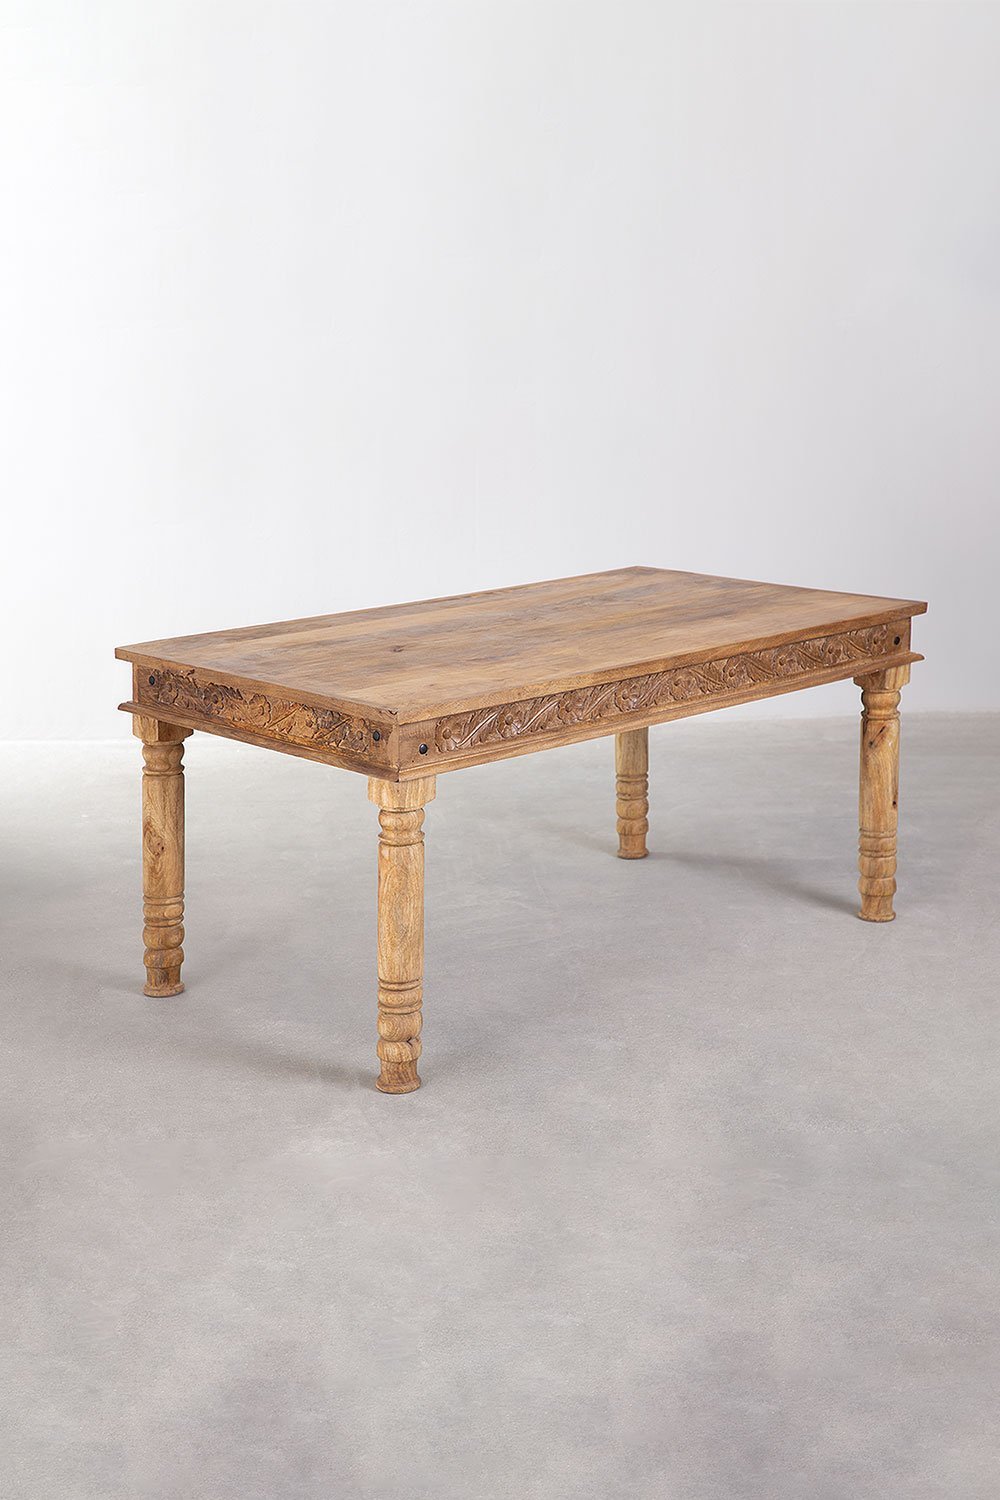 Prostokątny stół do jadalni z drewna mango (160x90 cm) Taraz, obrazek w galerii 1